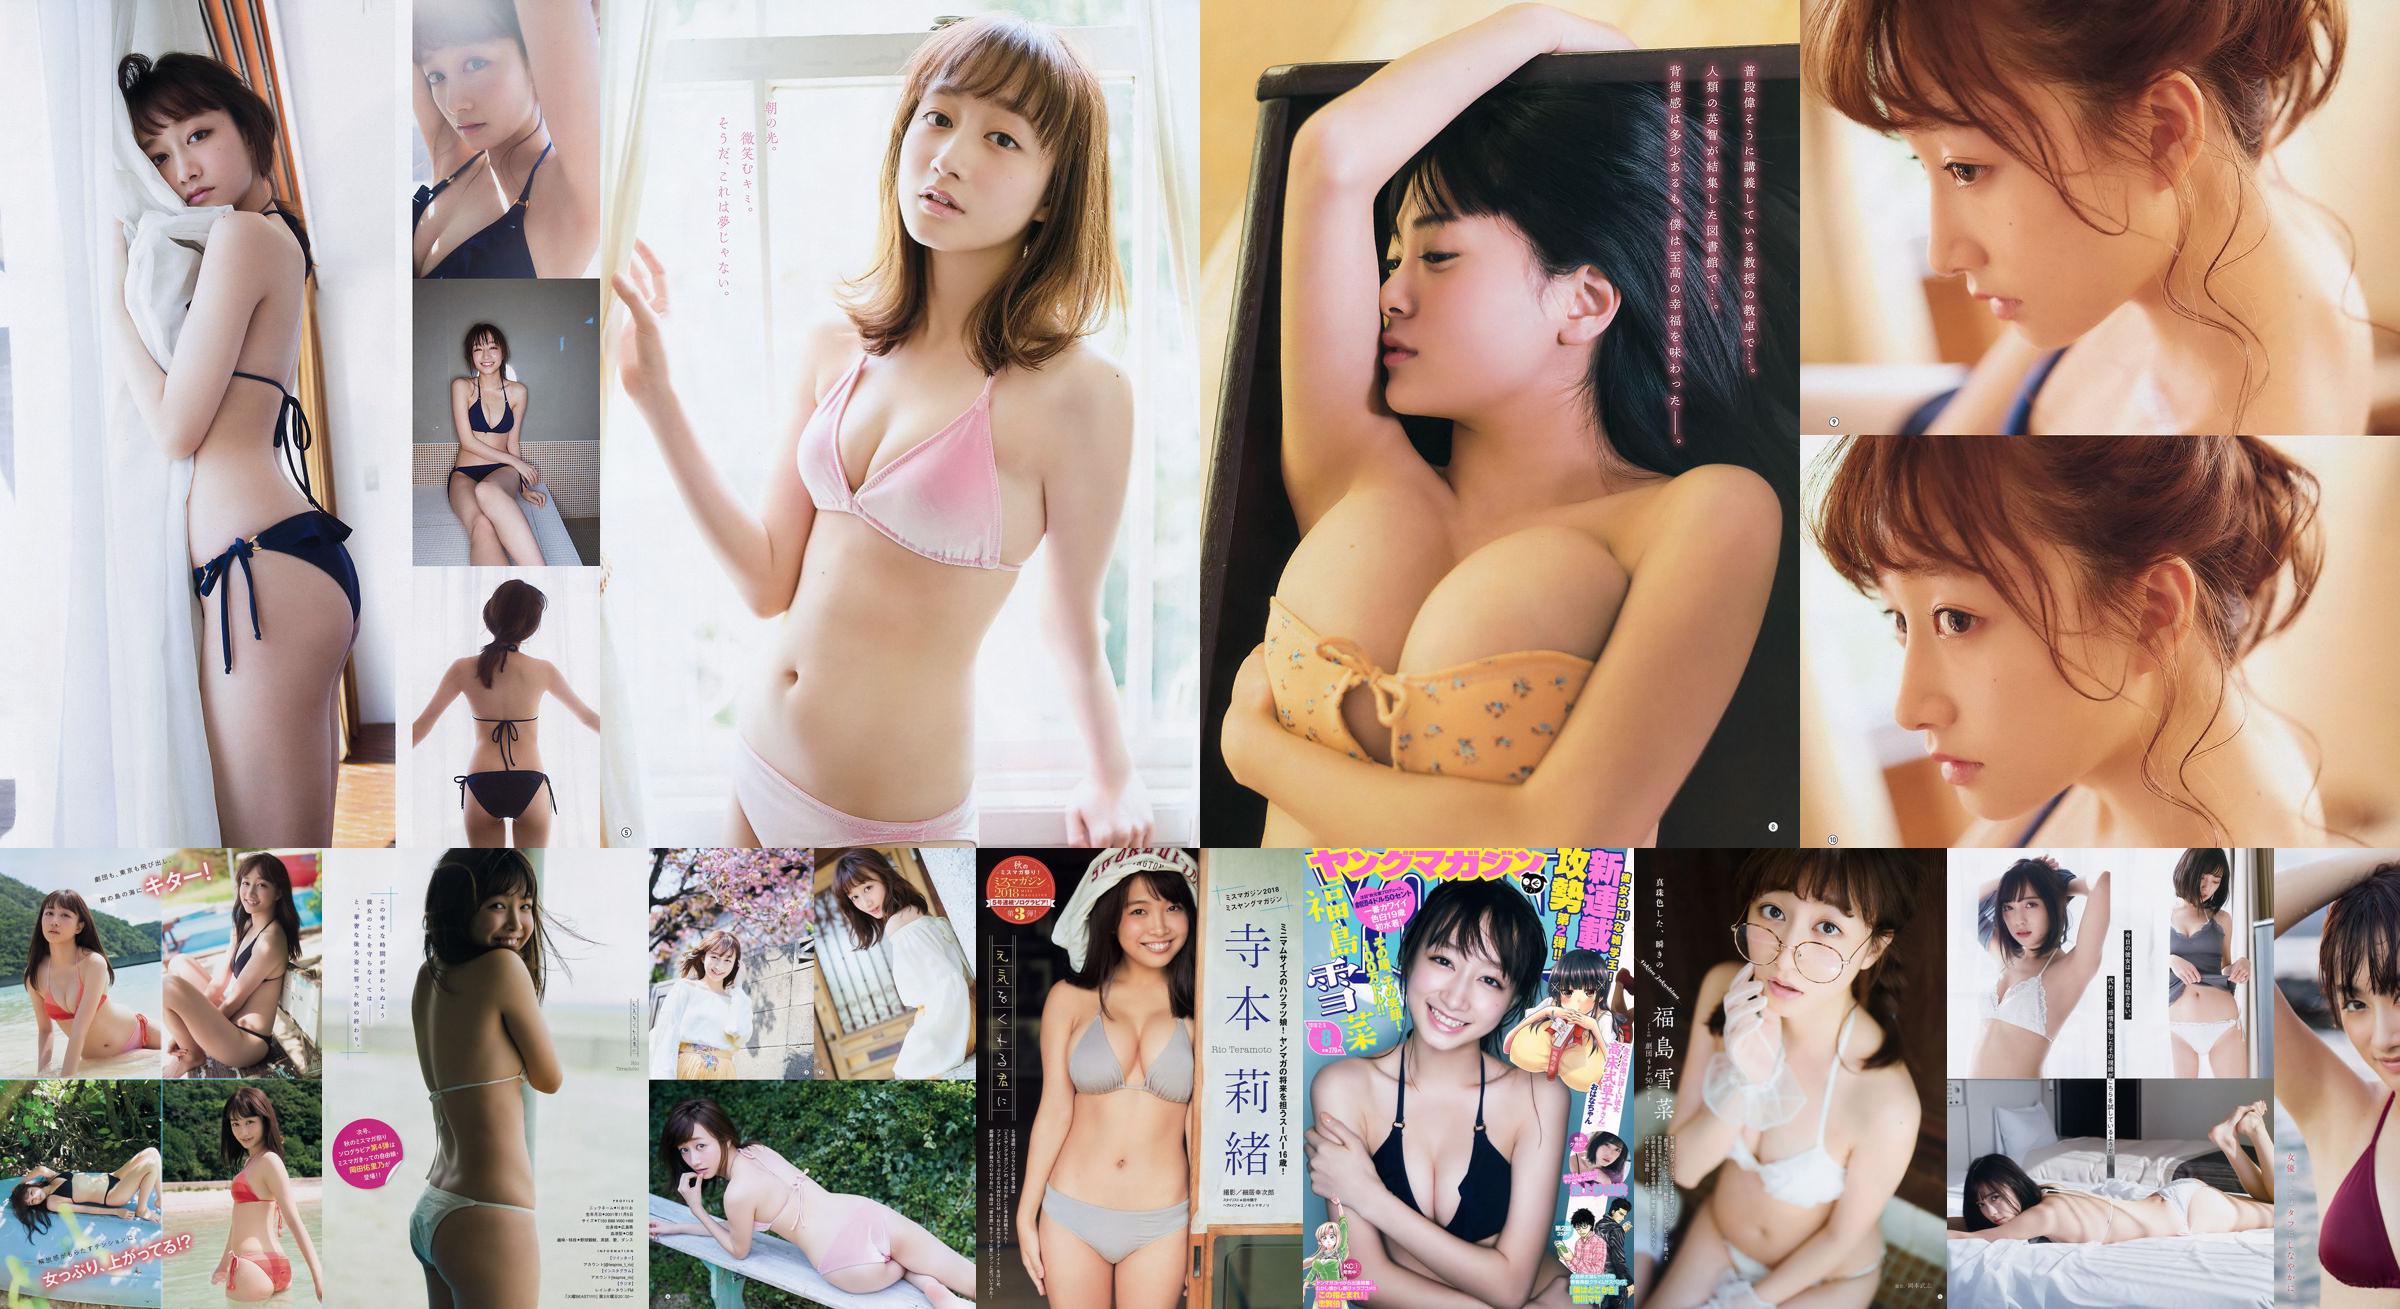 [FLASH] Yukina Fukushima Mariko Seyama Rina Asakawa Haruka 2018.11.20 Foto No.336807 Seite 3